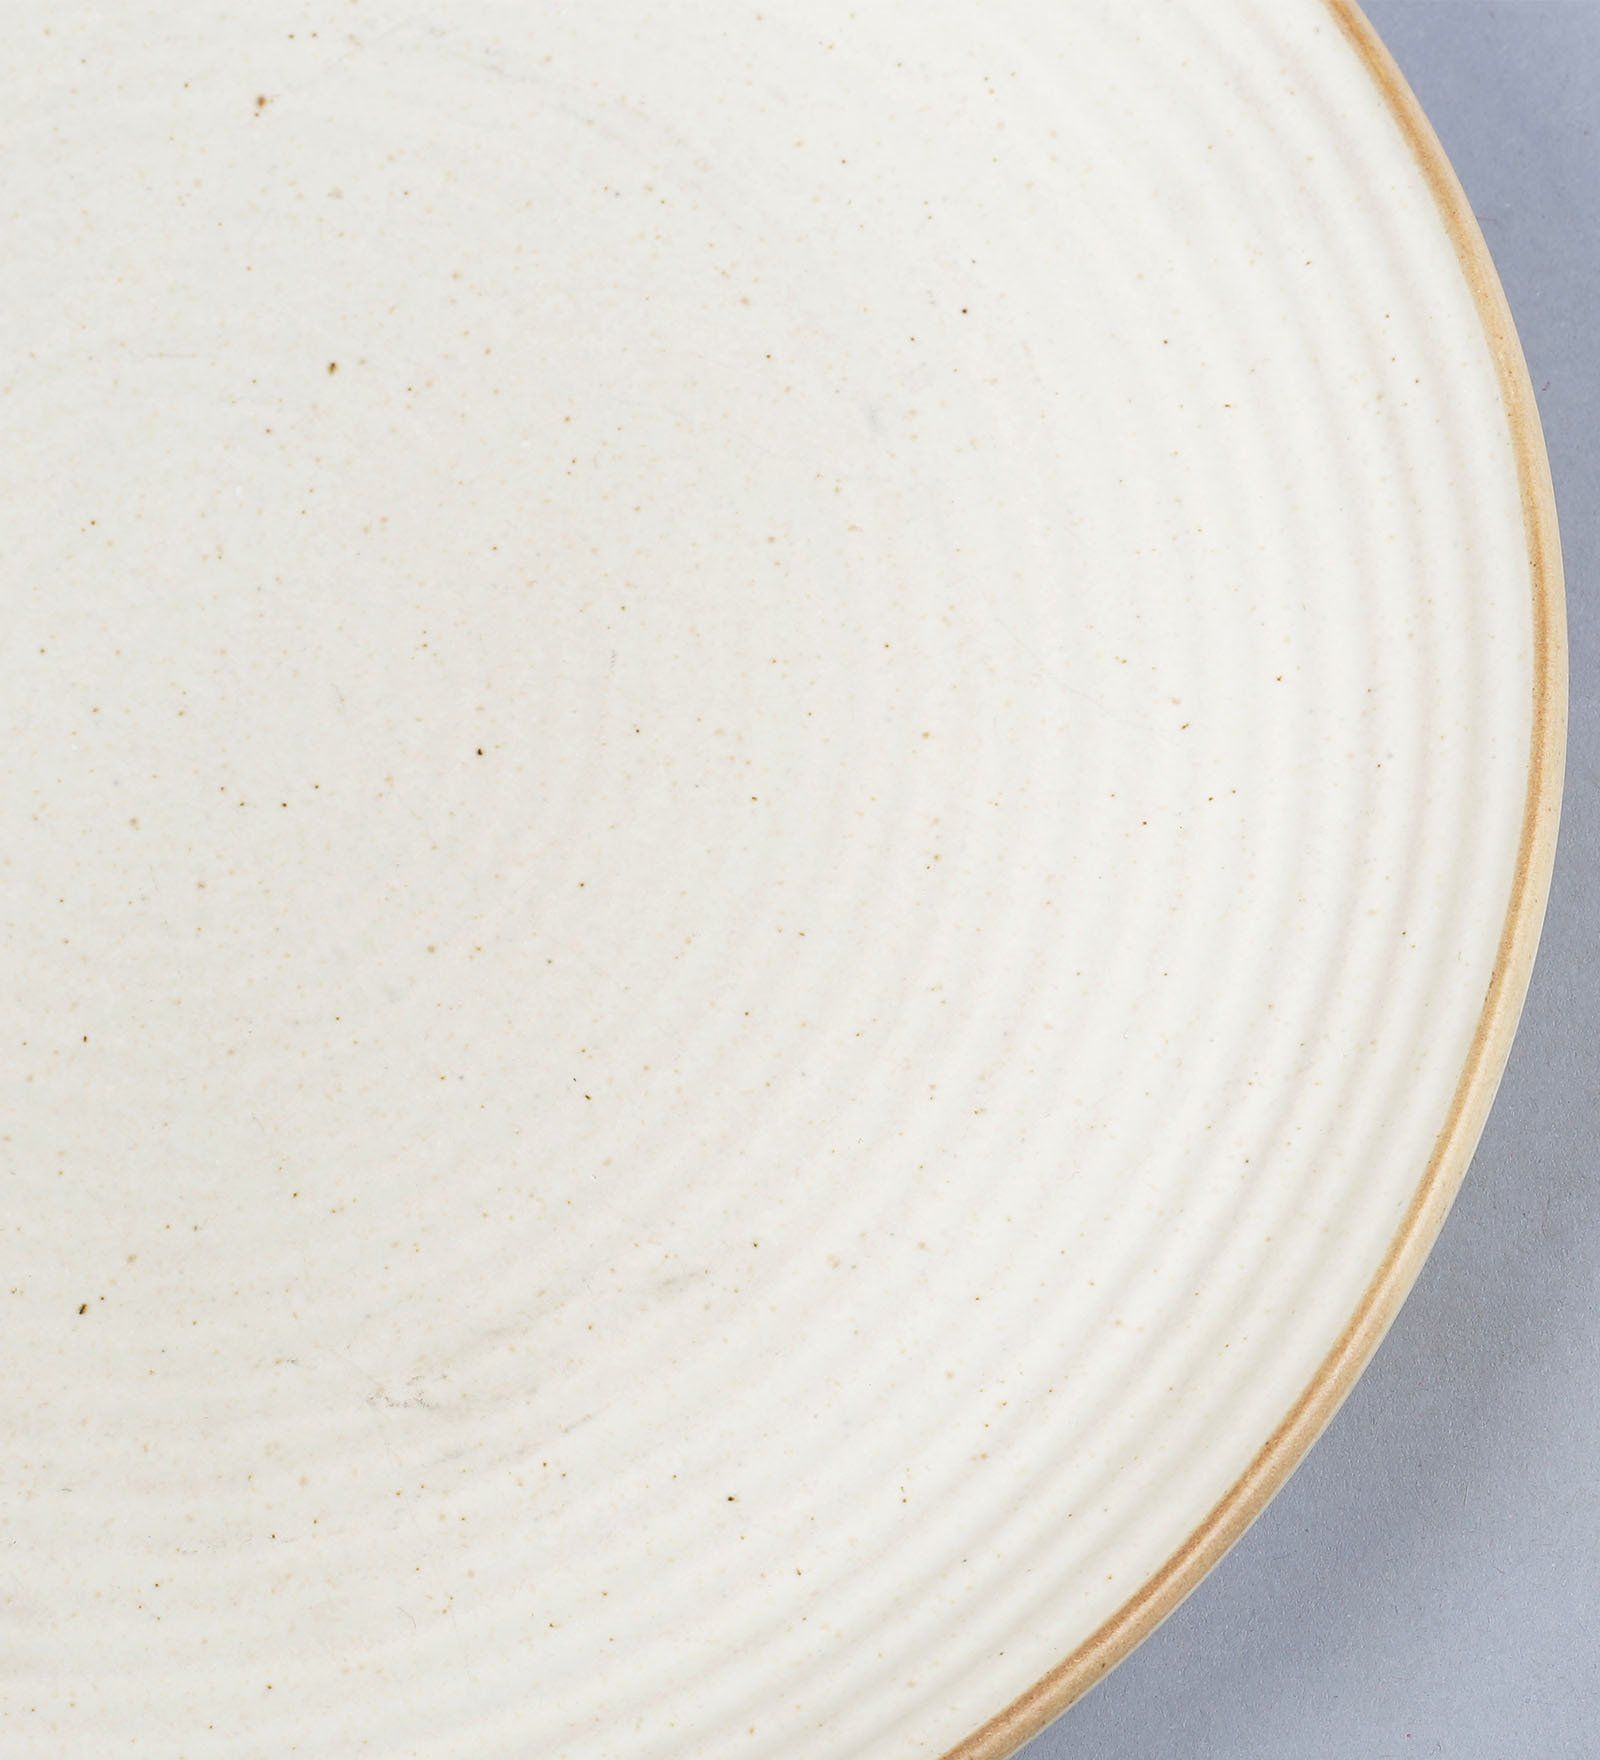 Plates - Ceramic - 8'' White Plate  Longforte – Longforte Trading Ltd